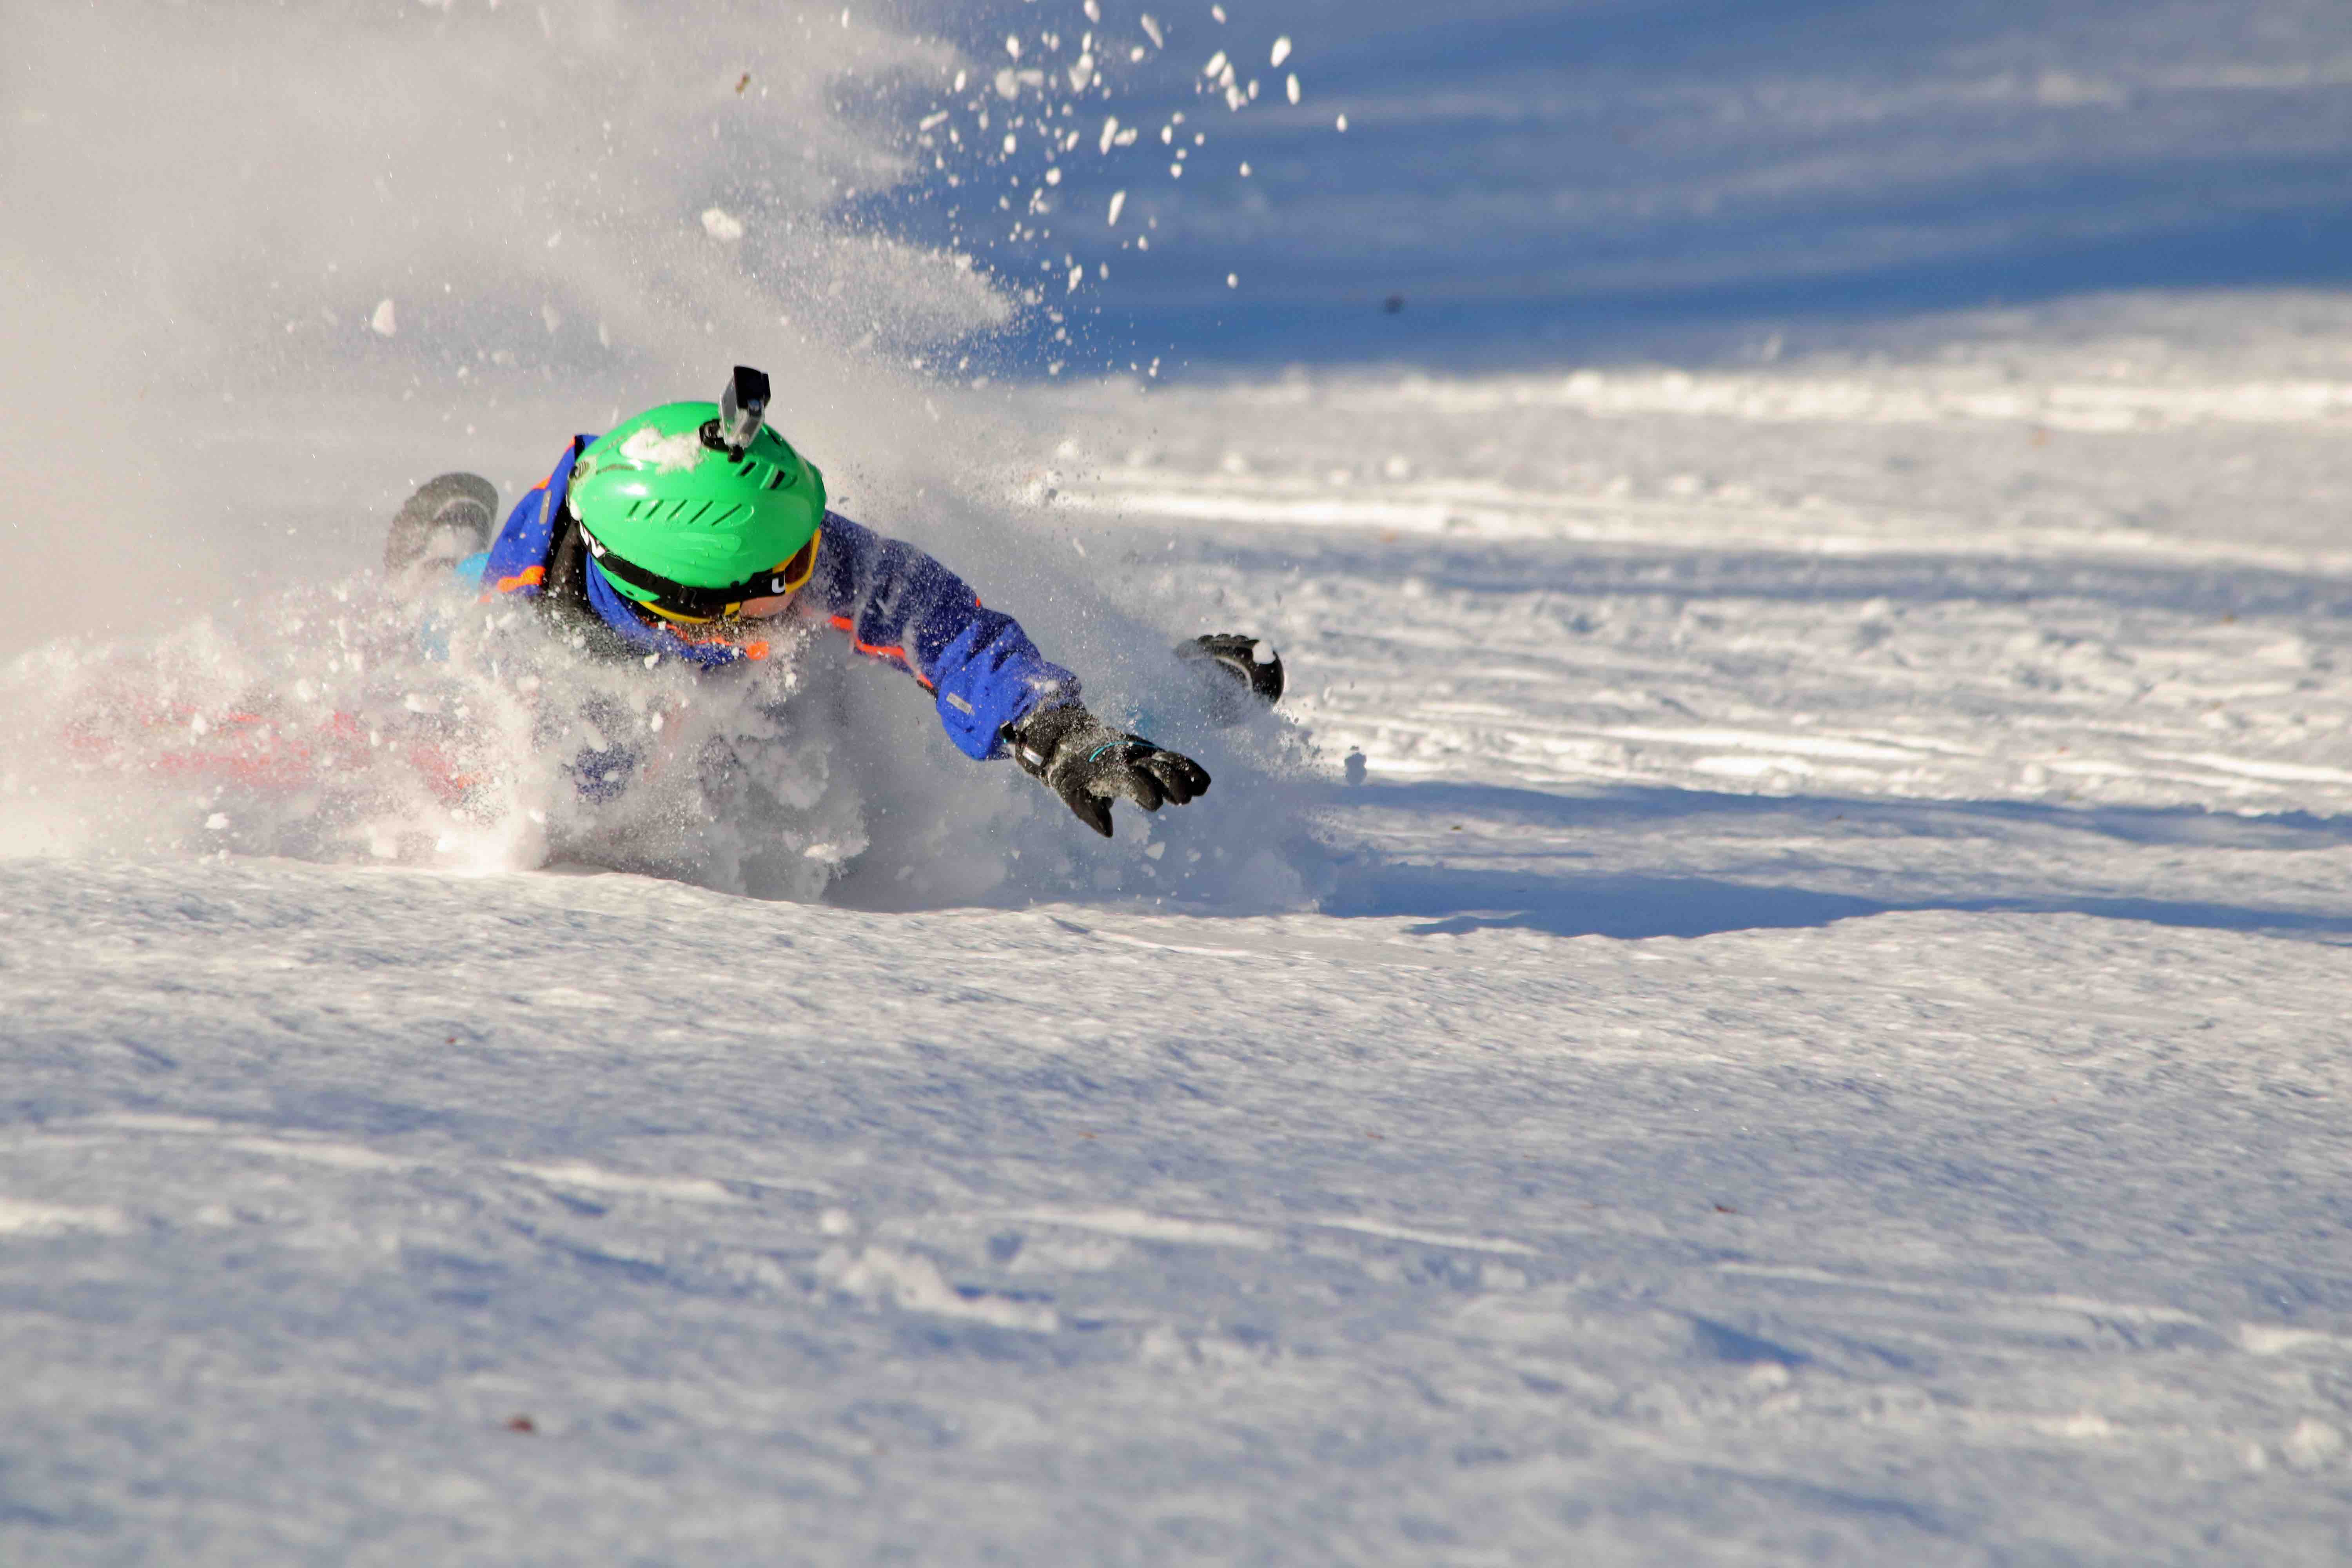 Winter Sport Injuries for Children